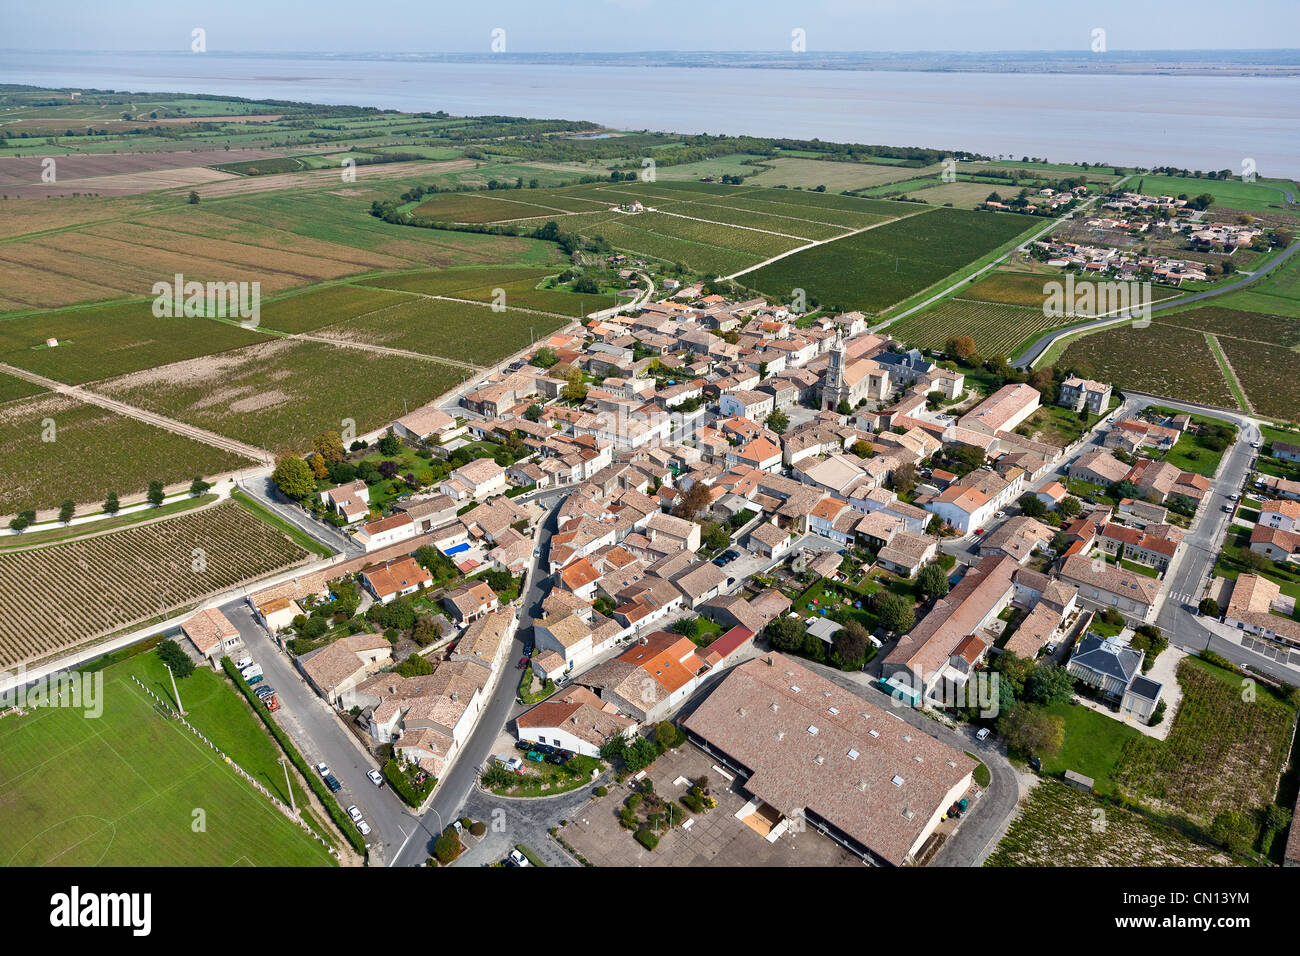 France, Gironde, Saint Estephe (aerial view) Stock Photo